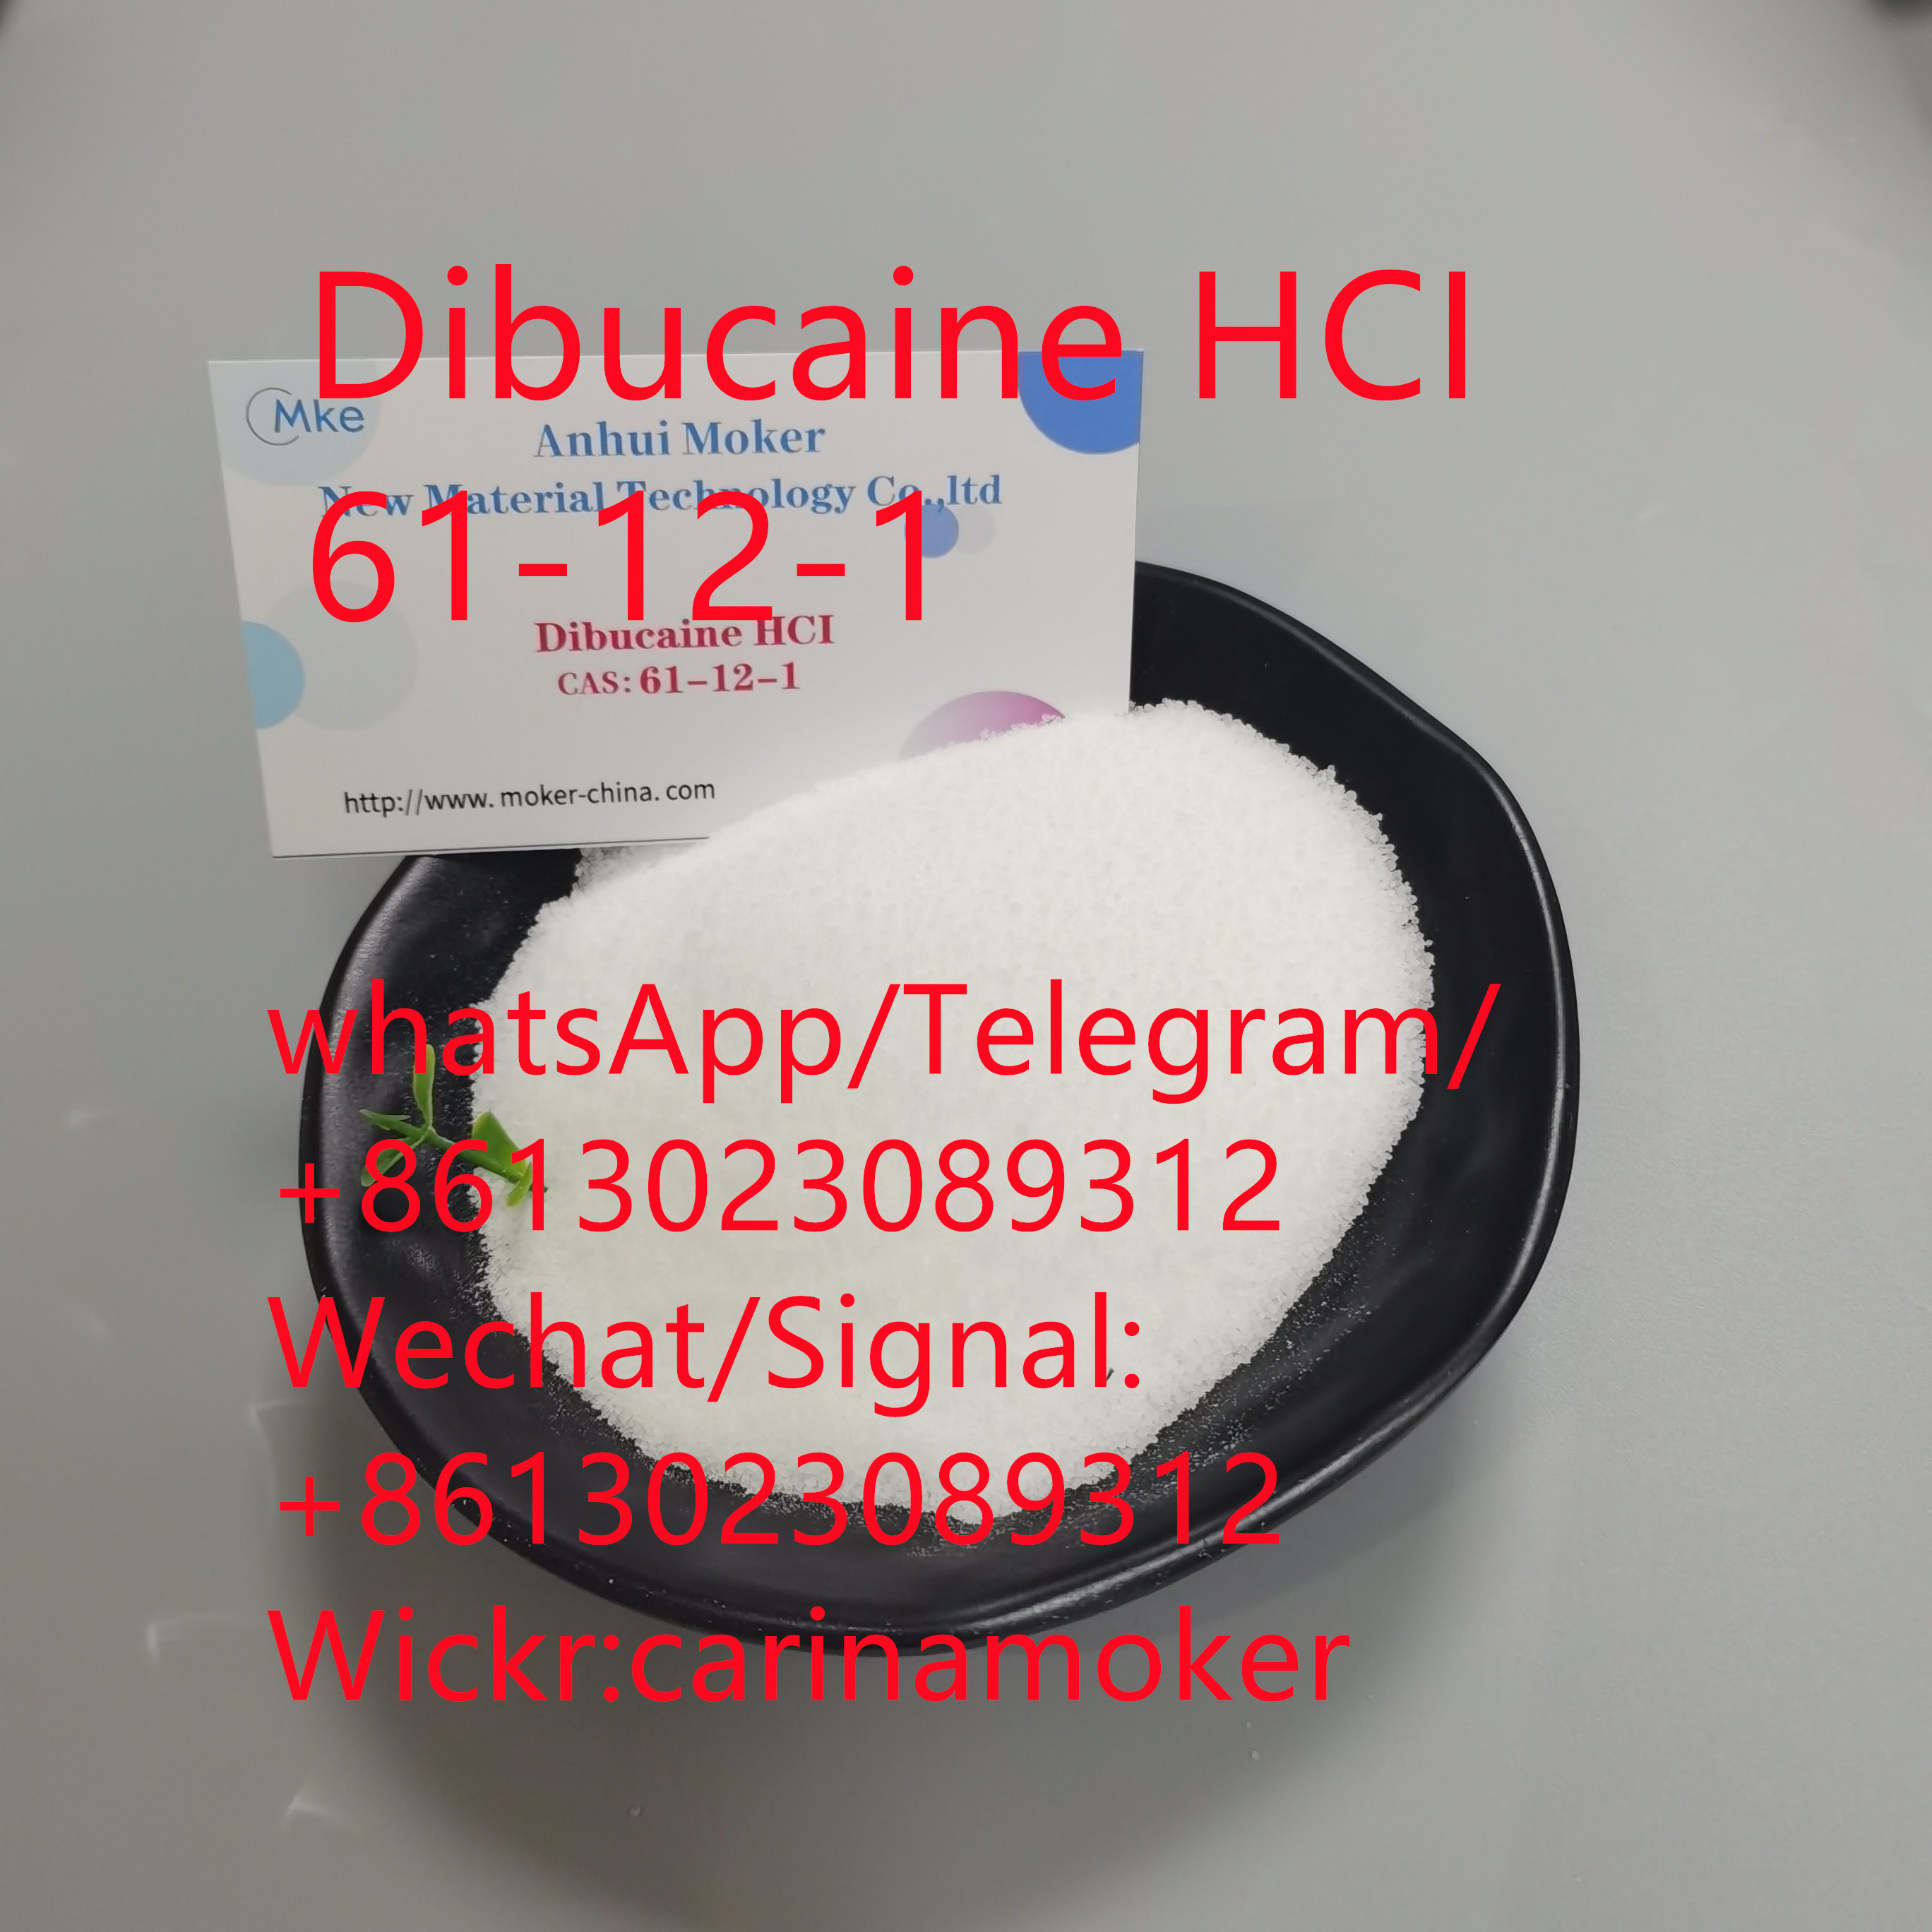 Hochwertiges Dibucain HCI 61-12-1 zu verkaufen